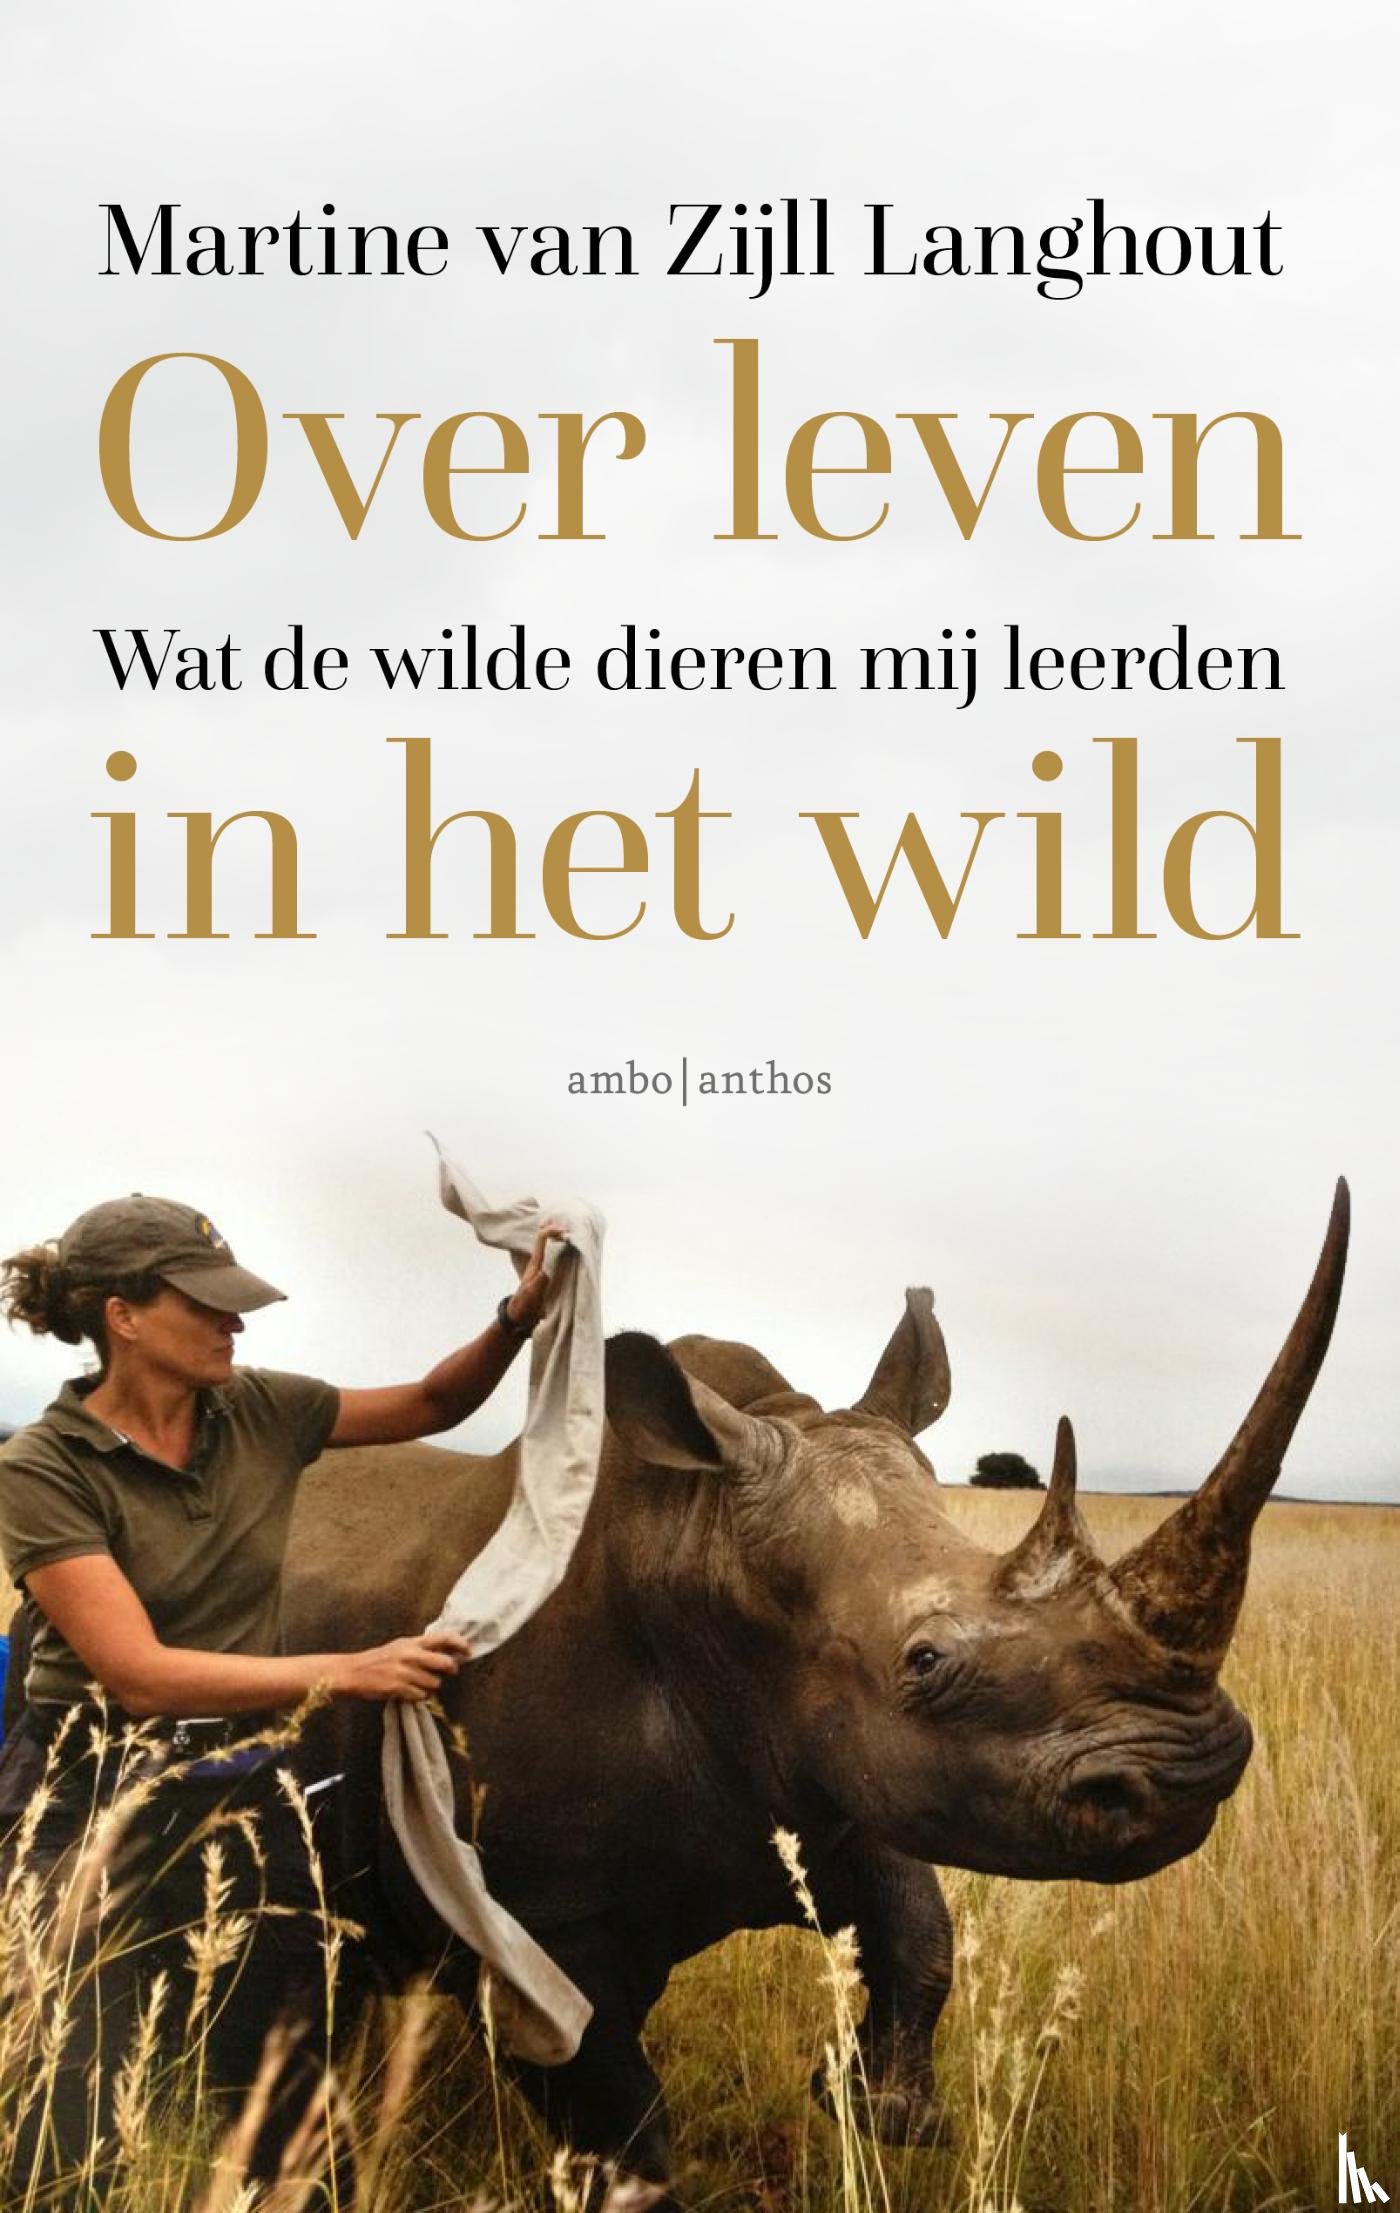 Zijll Langhout, Martine van - Over leven in het wild